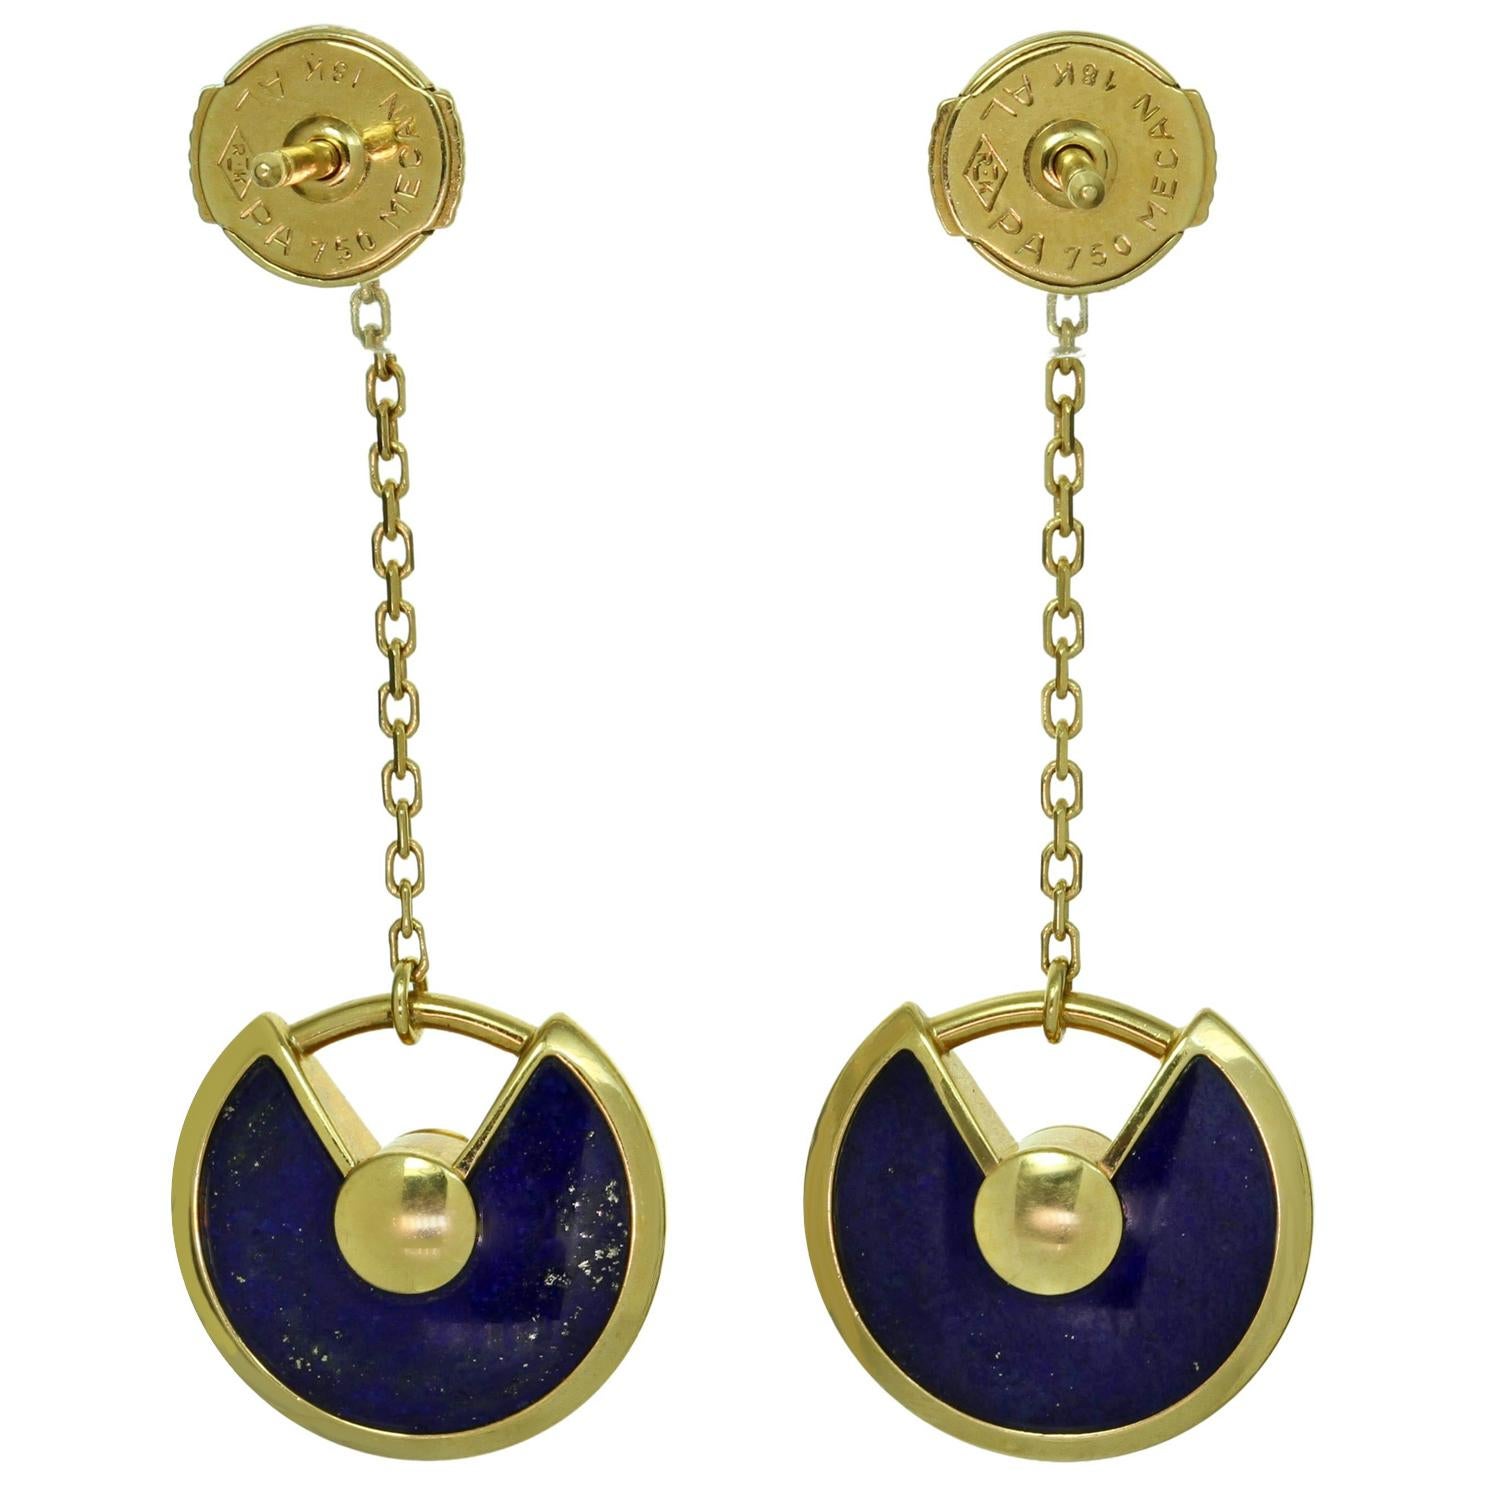 Ces magnifiques boucles d'oreilles de la collection Amulette de CARTIER sont réalisées en or jaune 18 carats et présentent des disques de lapis-lazuli suspendus à des diamants solitaires sertis en chaton et rehaussés d'un diamant rond de taille